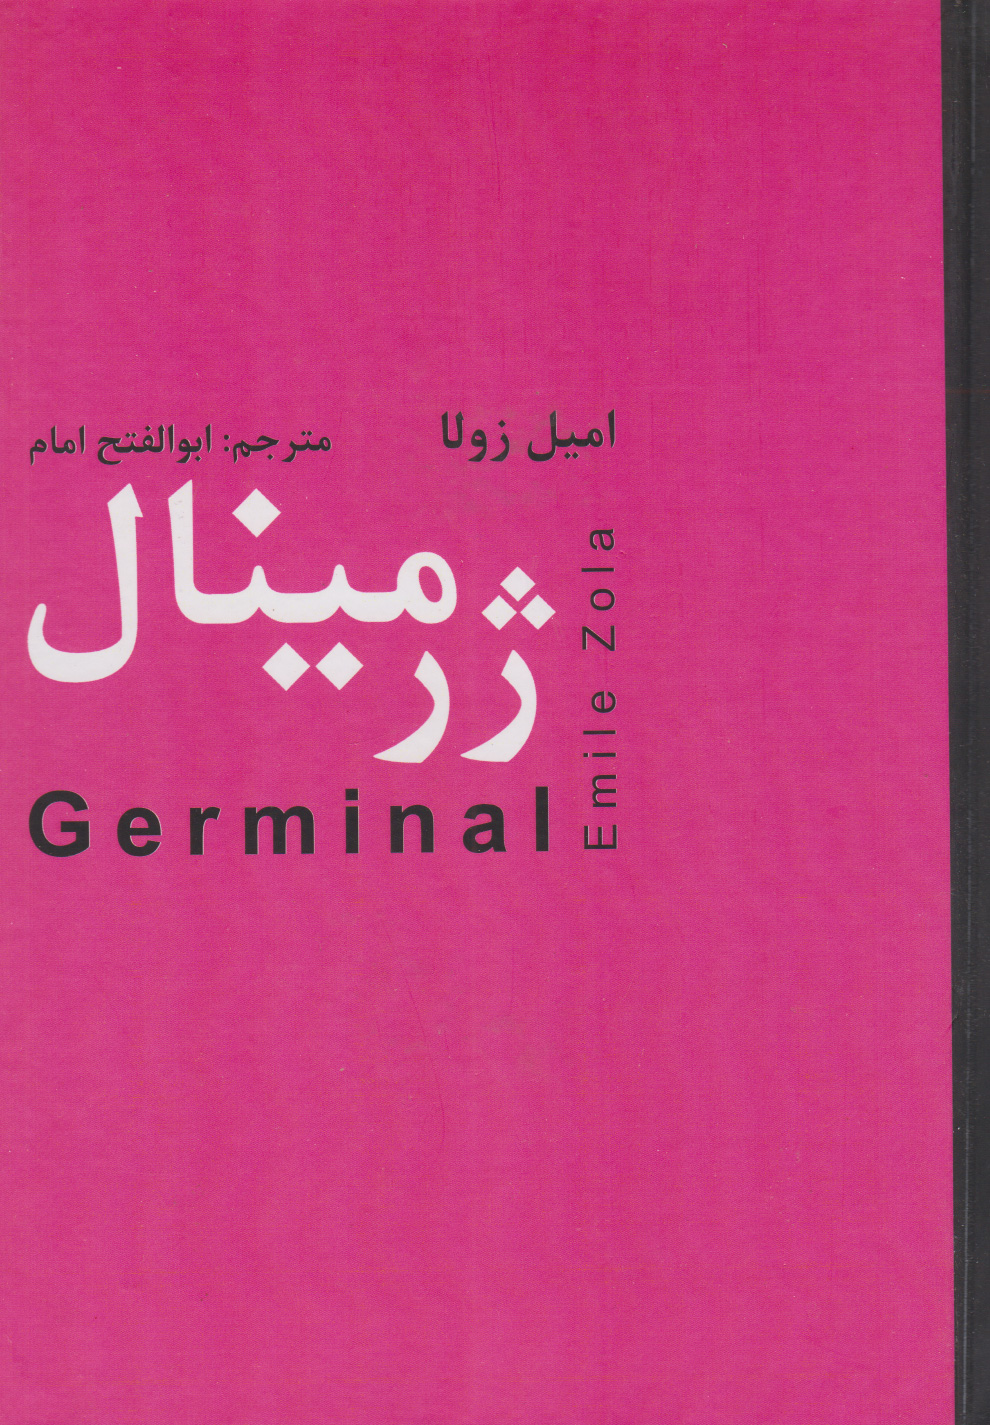 کتاب ژرمینال